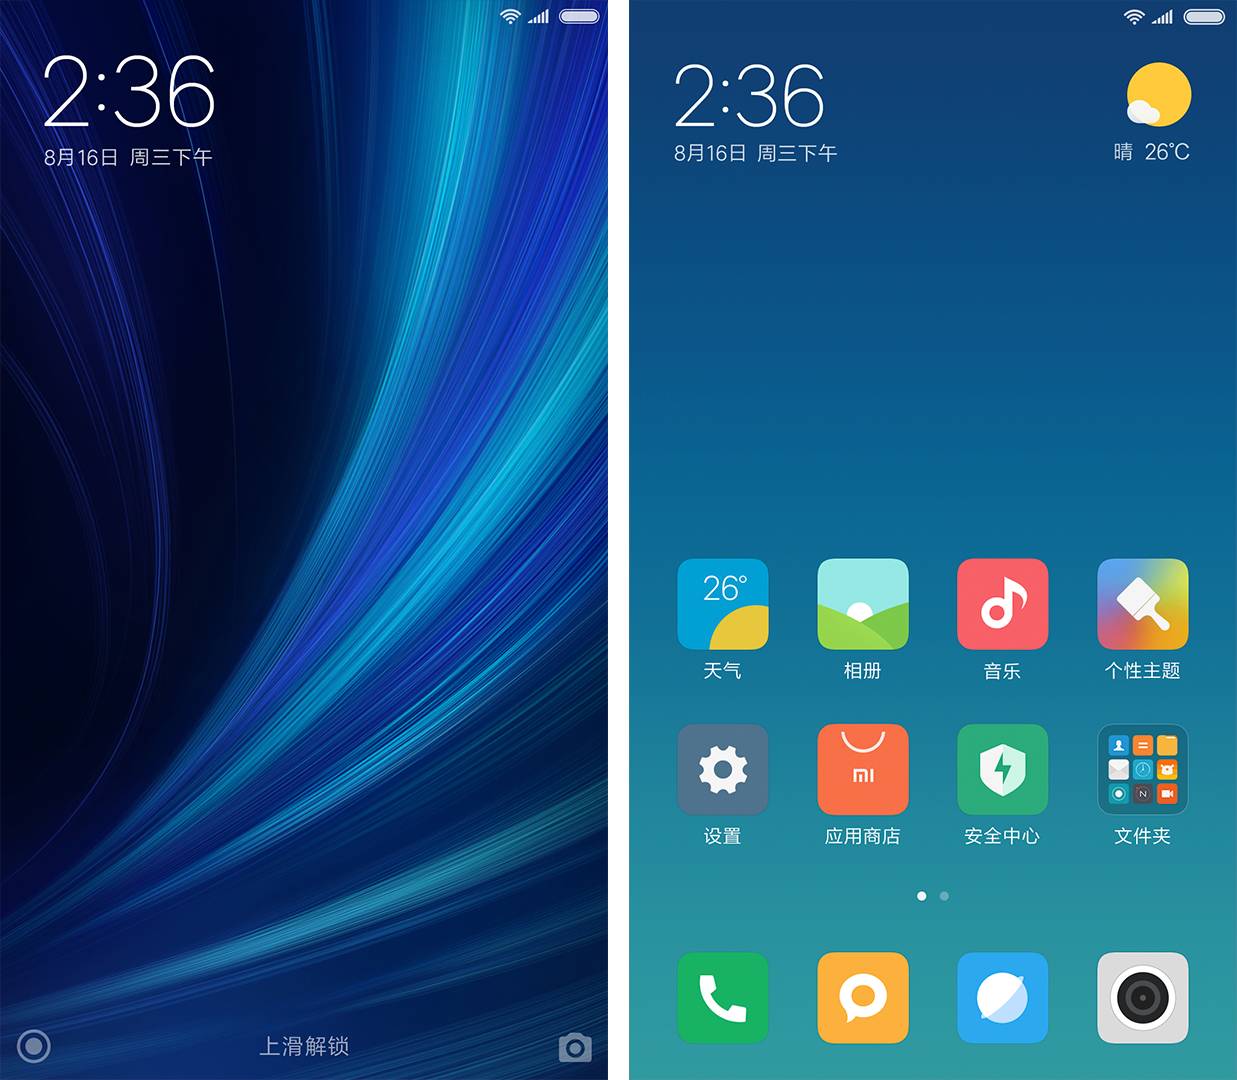 Как Вернуть Часы На Экран Андроид Xiaomi